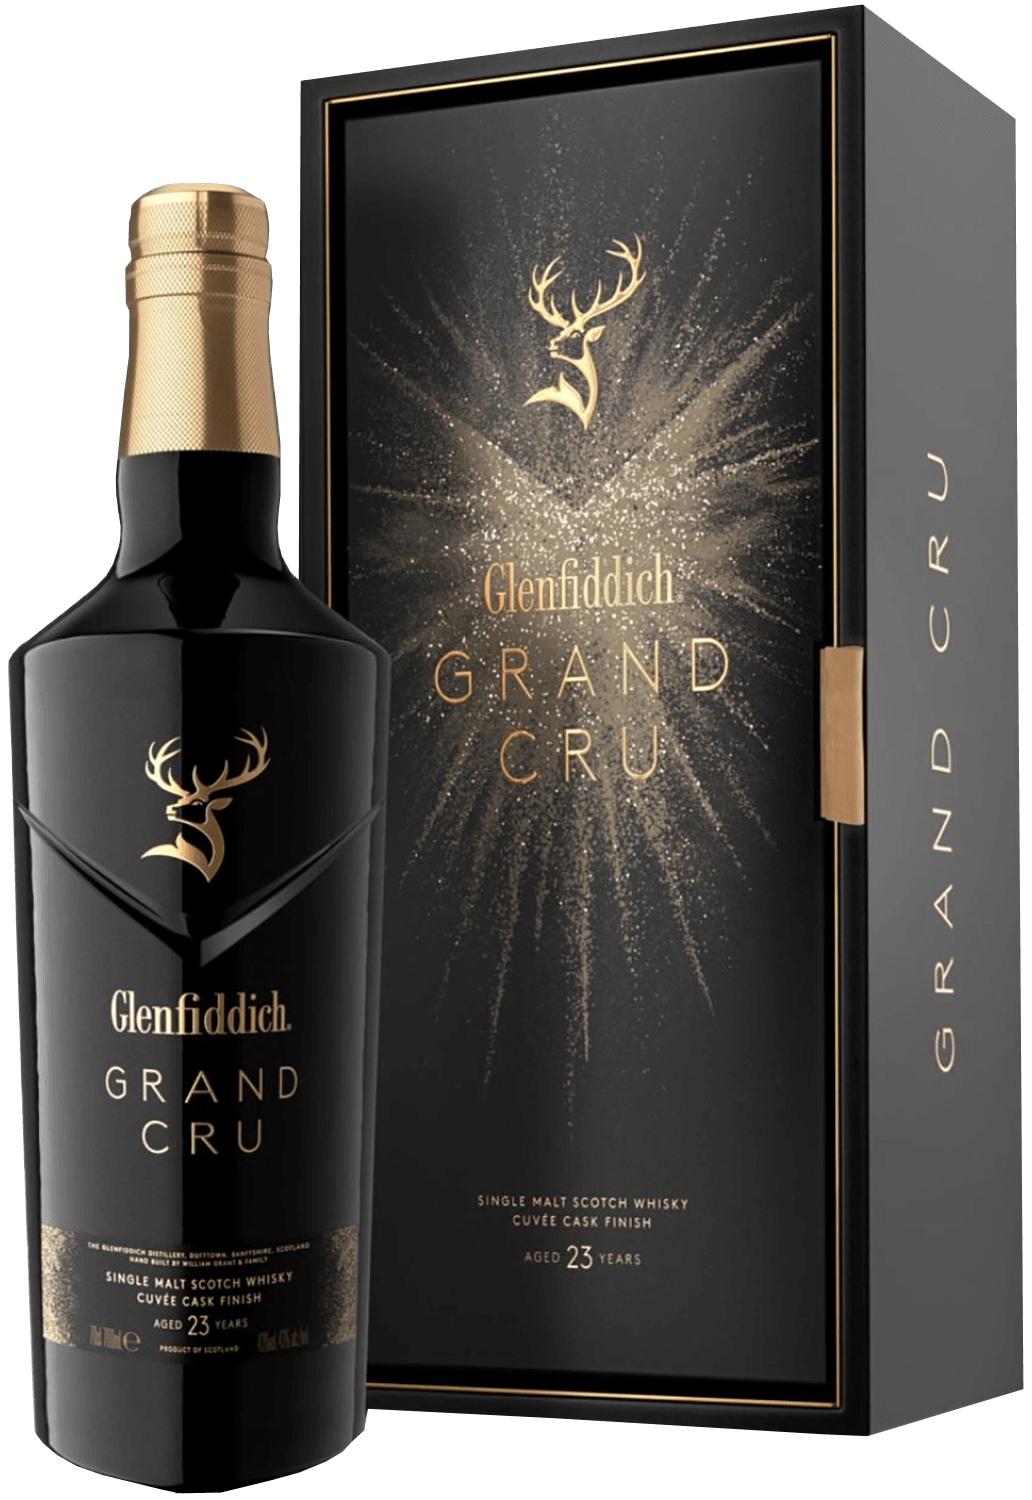 Glenfiddich Grand Cru 23 y.o. Single Malt Scotch Whisky (gift box) glenfiddich single malt scotch whisky 15 y o gift box